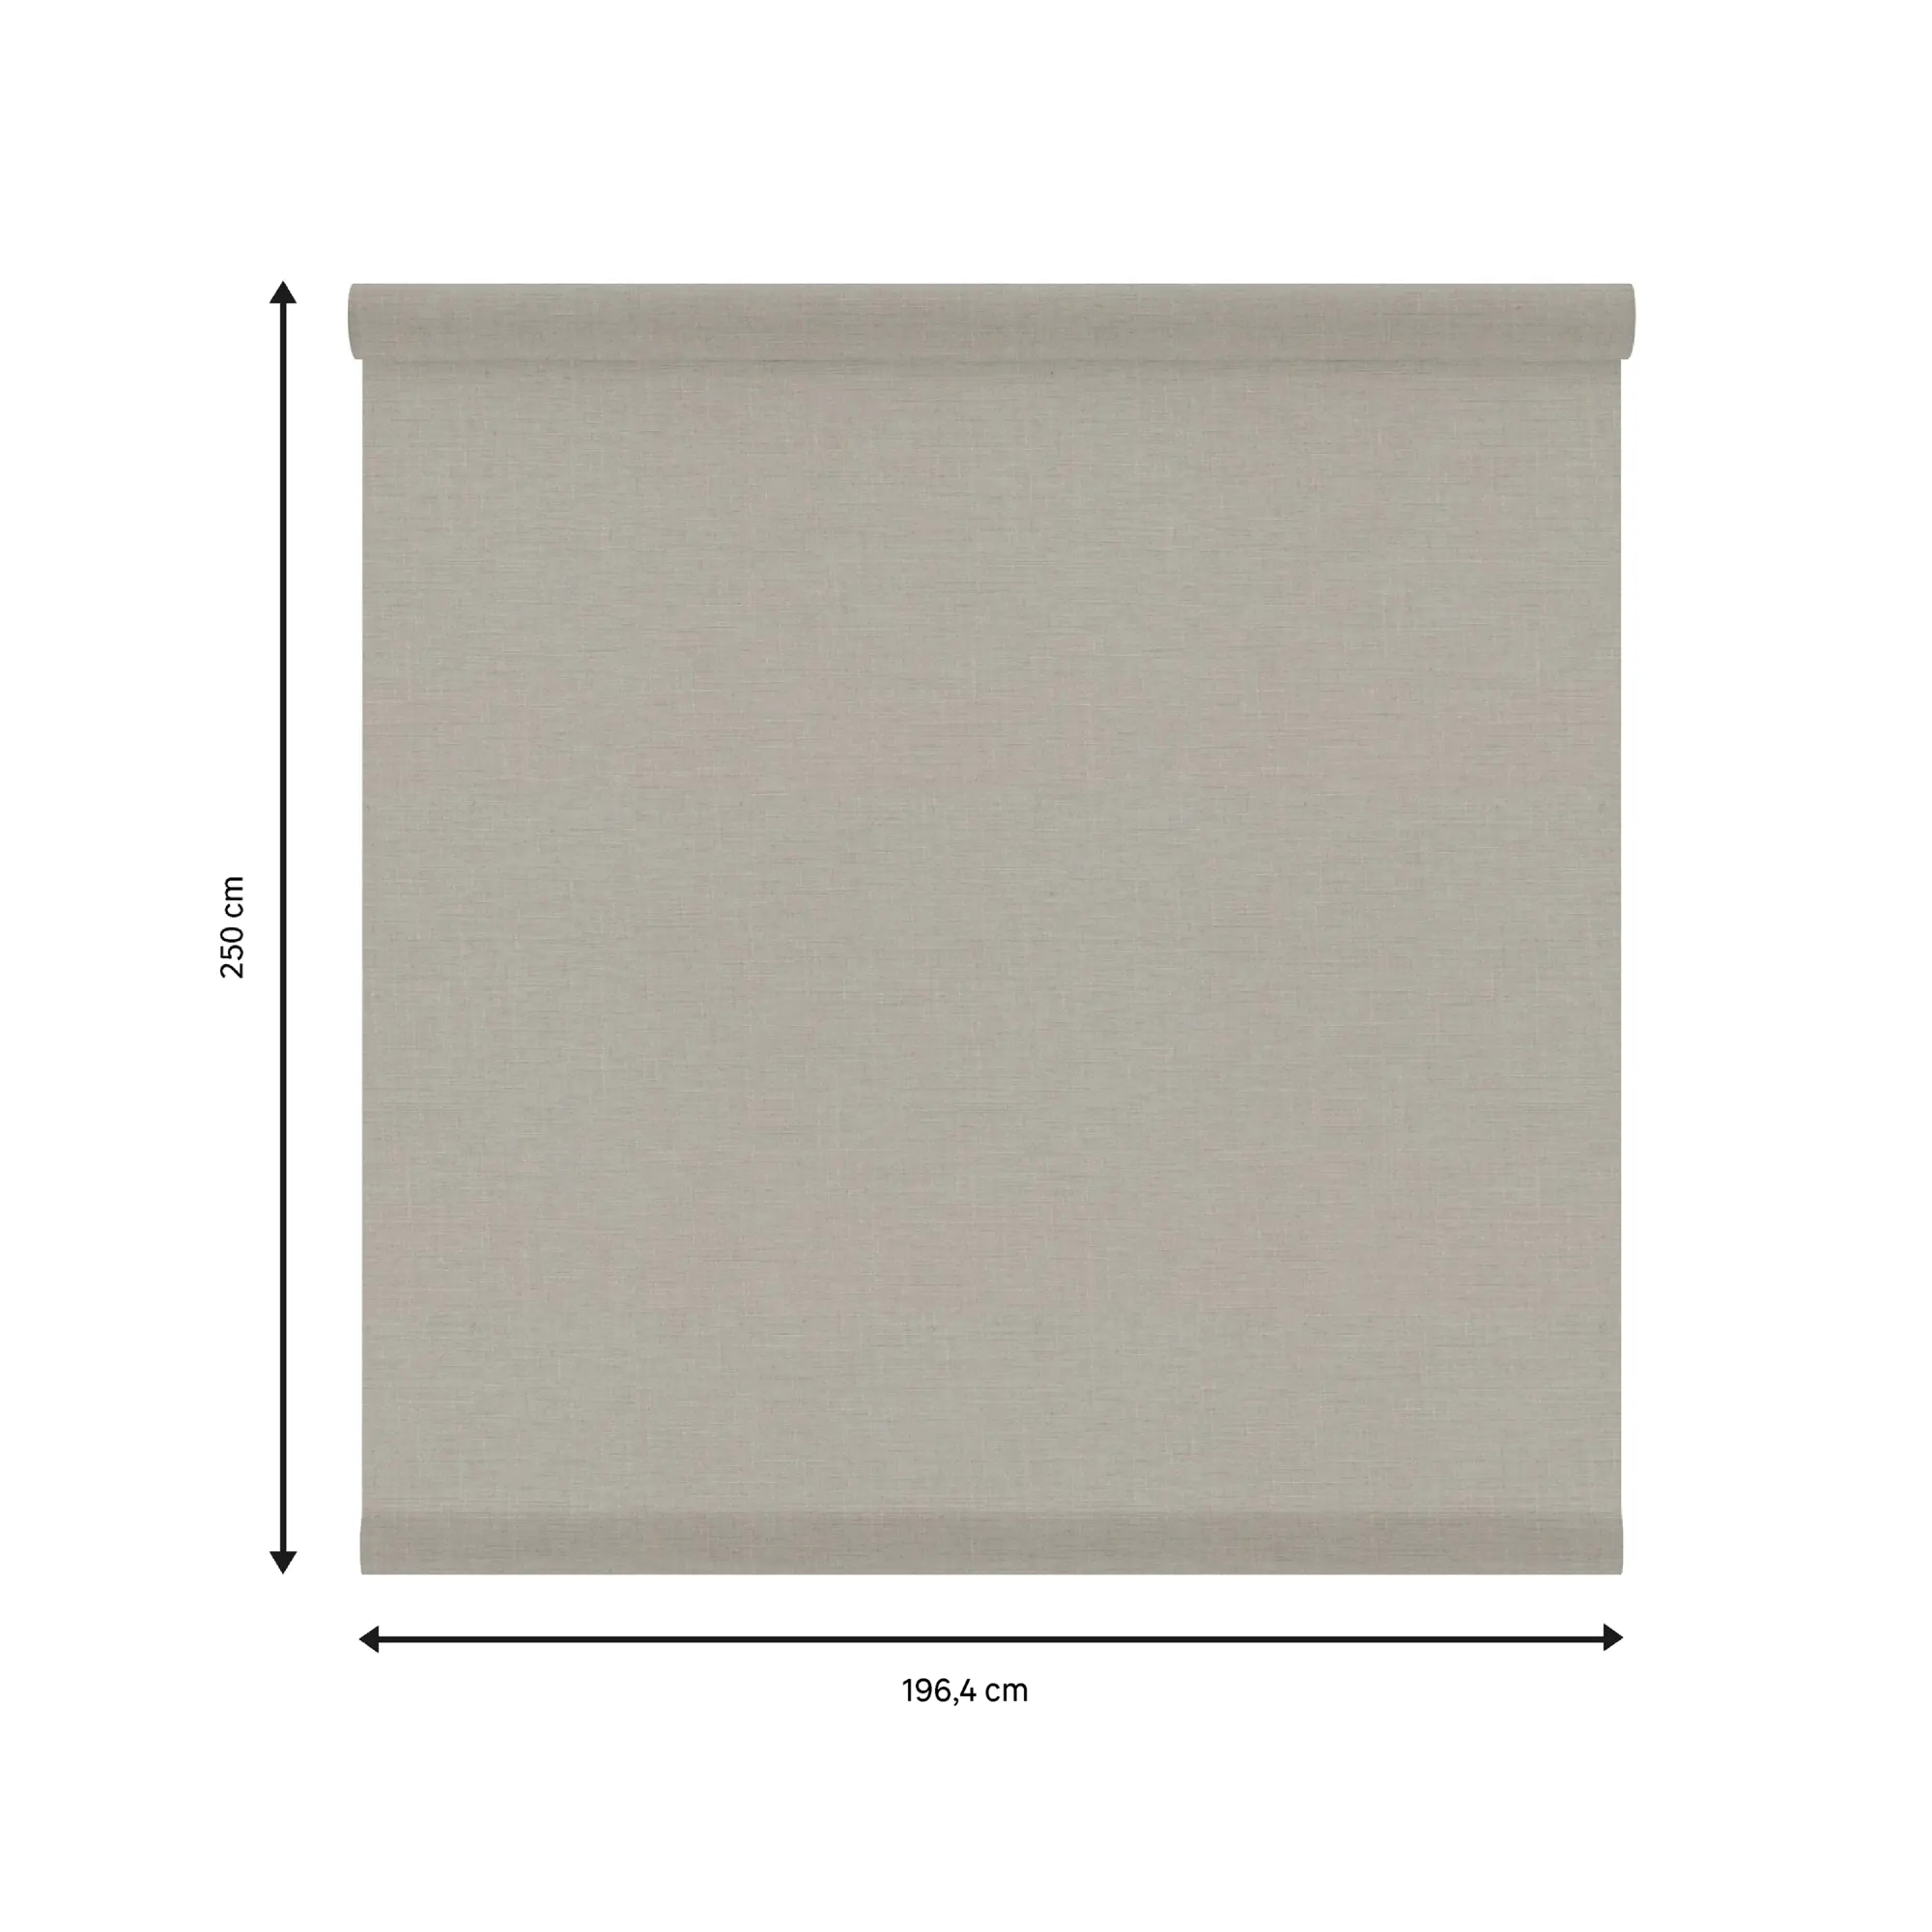 Tessuto per tende a rullo filtrante INSPIRE Brisbane beige 197 x 250 cm - 2